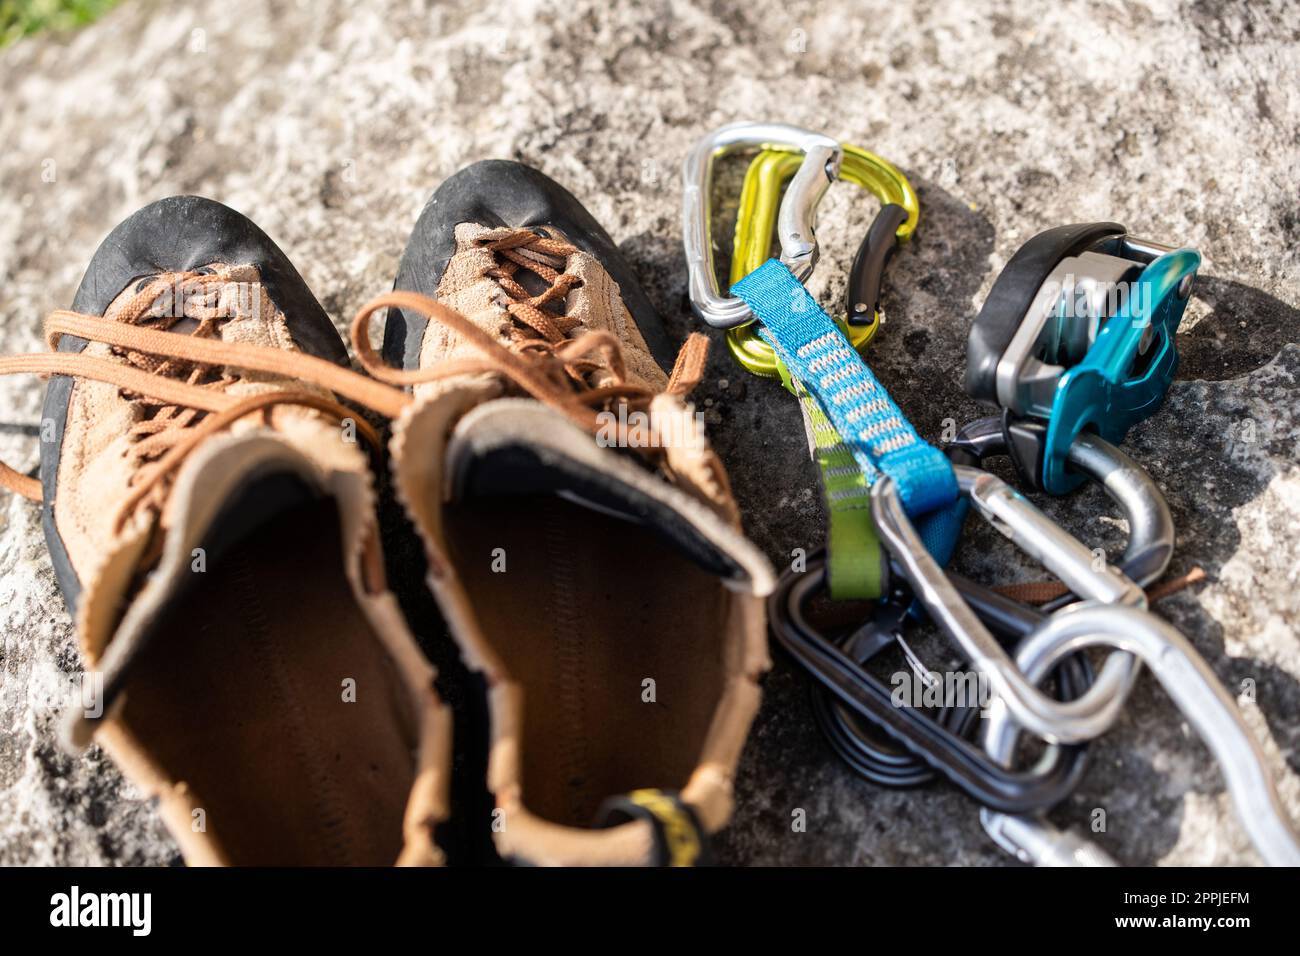 Scarpe e accessori usati per arrampicata su roccia Foto Stock